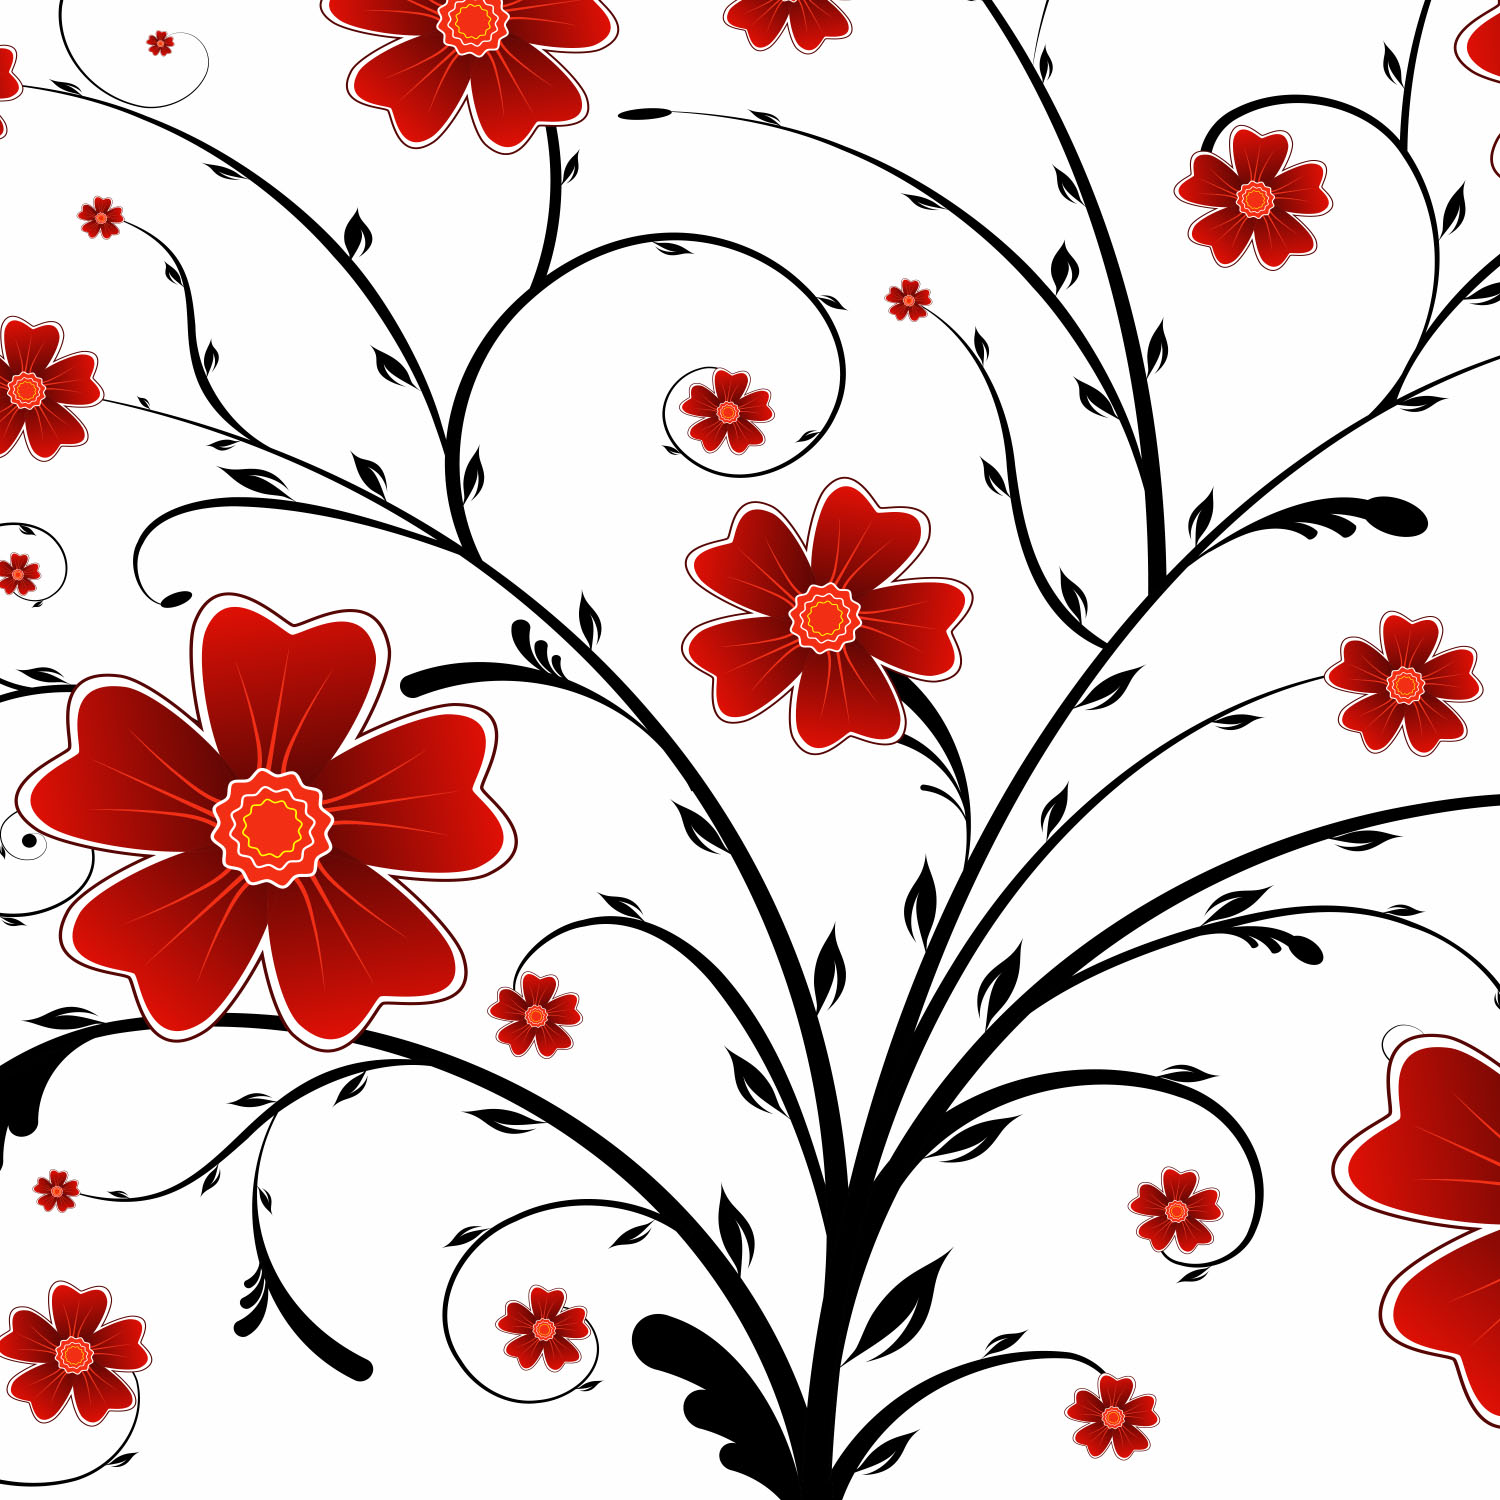 floral vector illustration free download